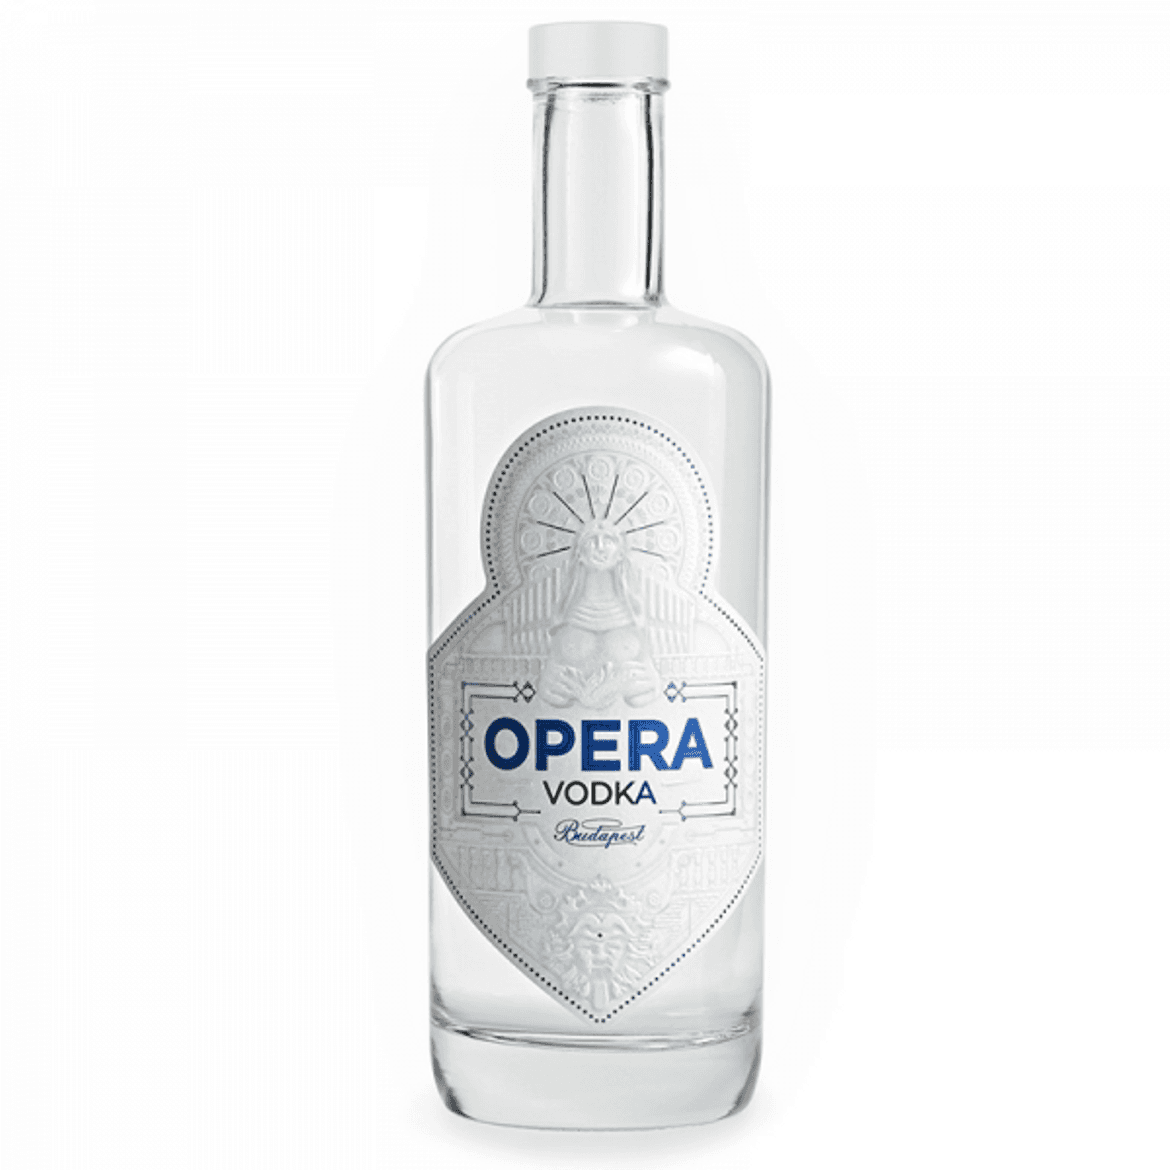 Opera vodka 40%